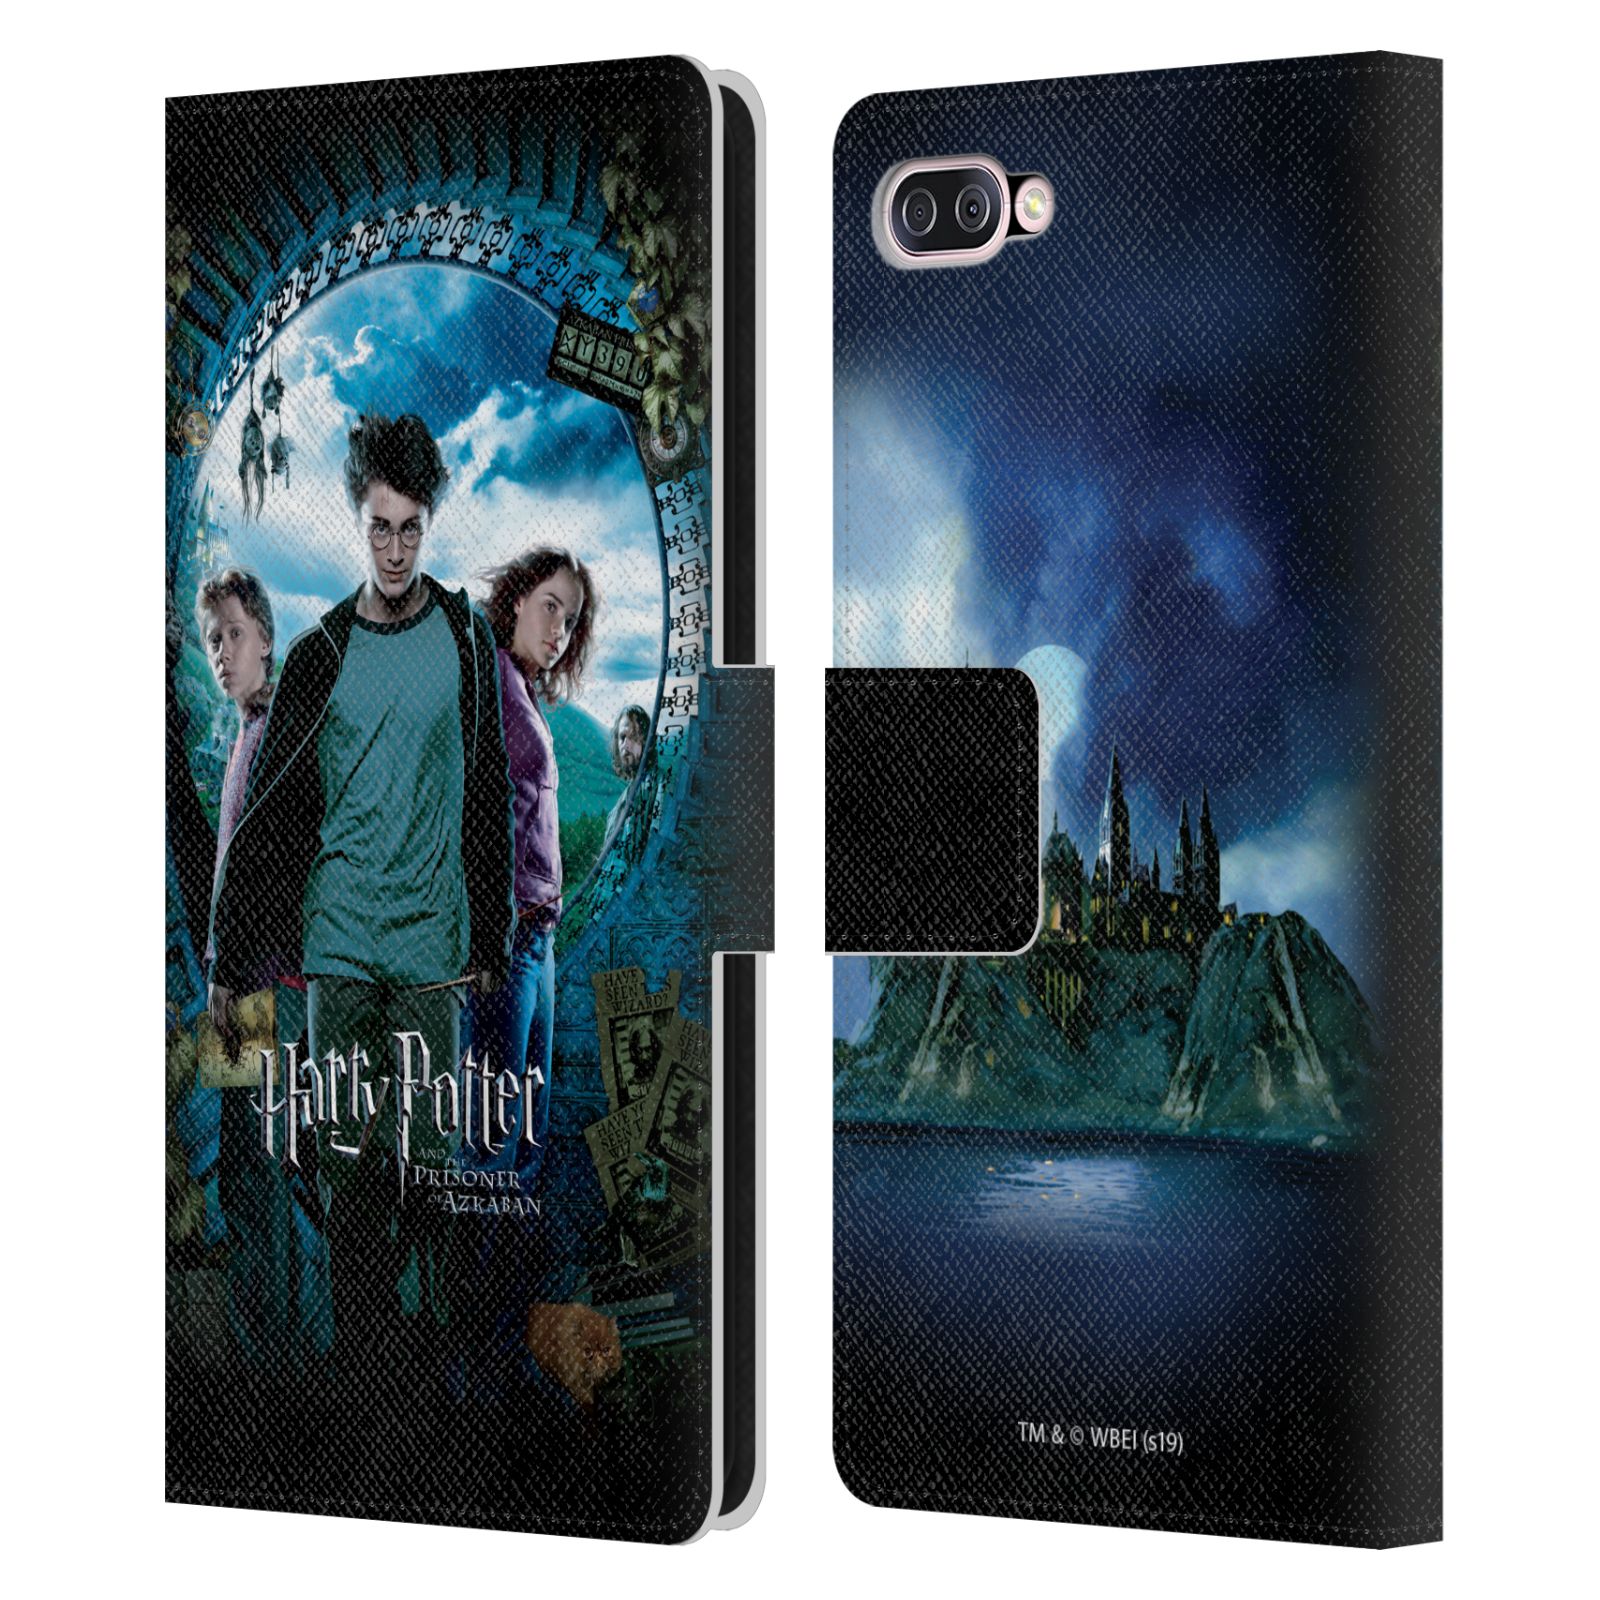 Pouzdro na mobil Asus Zenfone 4 Max (ZC554KL)  - HEAD CASE - Harry Potter - Vězeň z Azkabanu